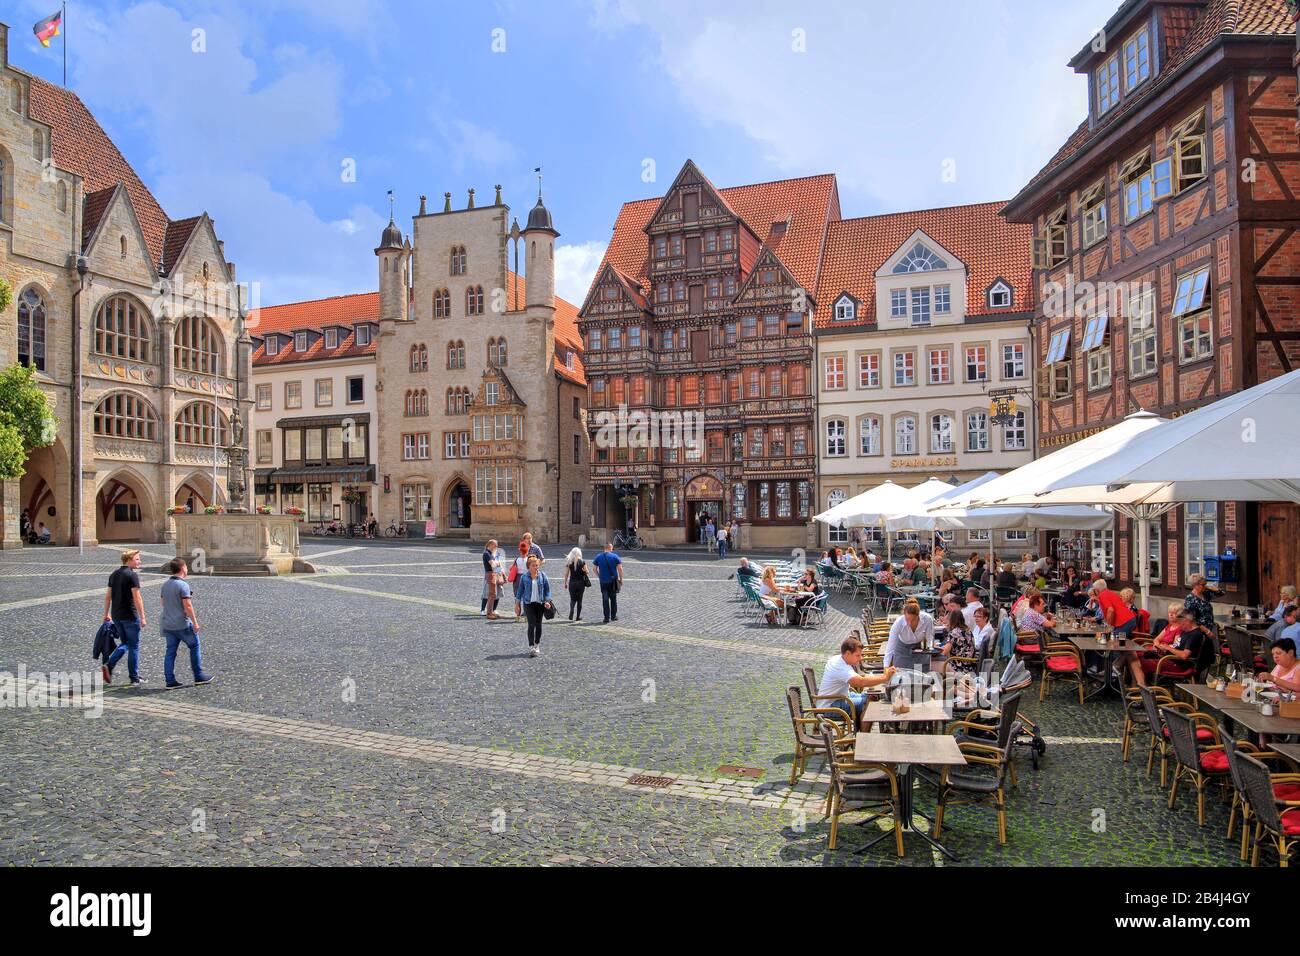 Straßencafé am Marktplatz mit Rathaus, Roland-Brunnen, Tempelhaus und Wedekindhaus, Hildesheim, Niedersachsen, Deutschland Stockfoto